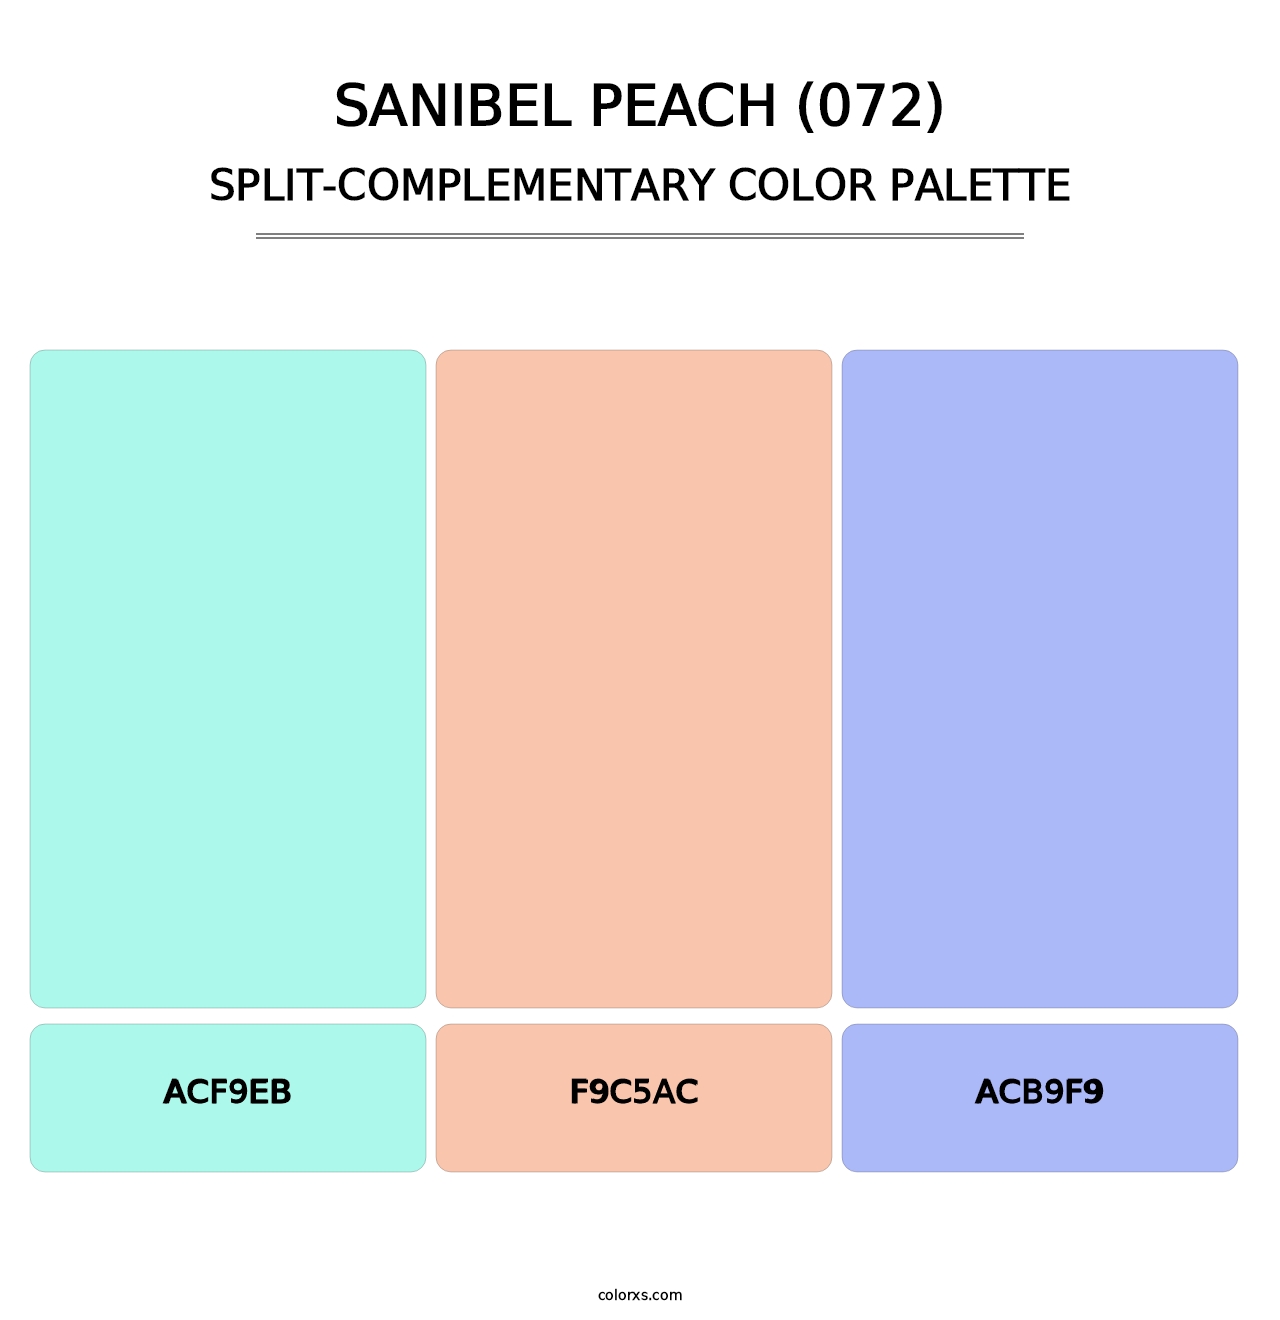 Sanibel Peach (072) - Split-Complementary Color Palette